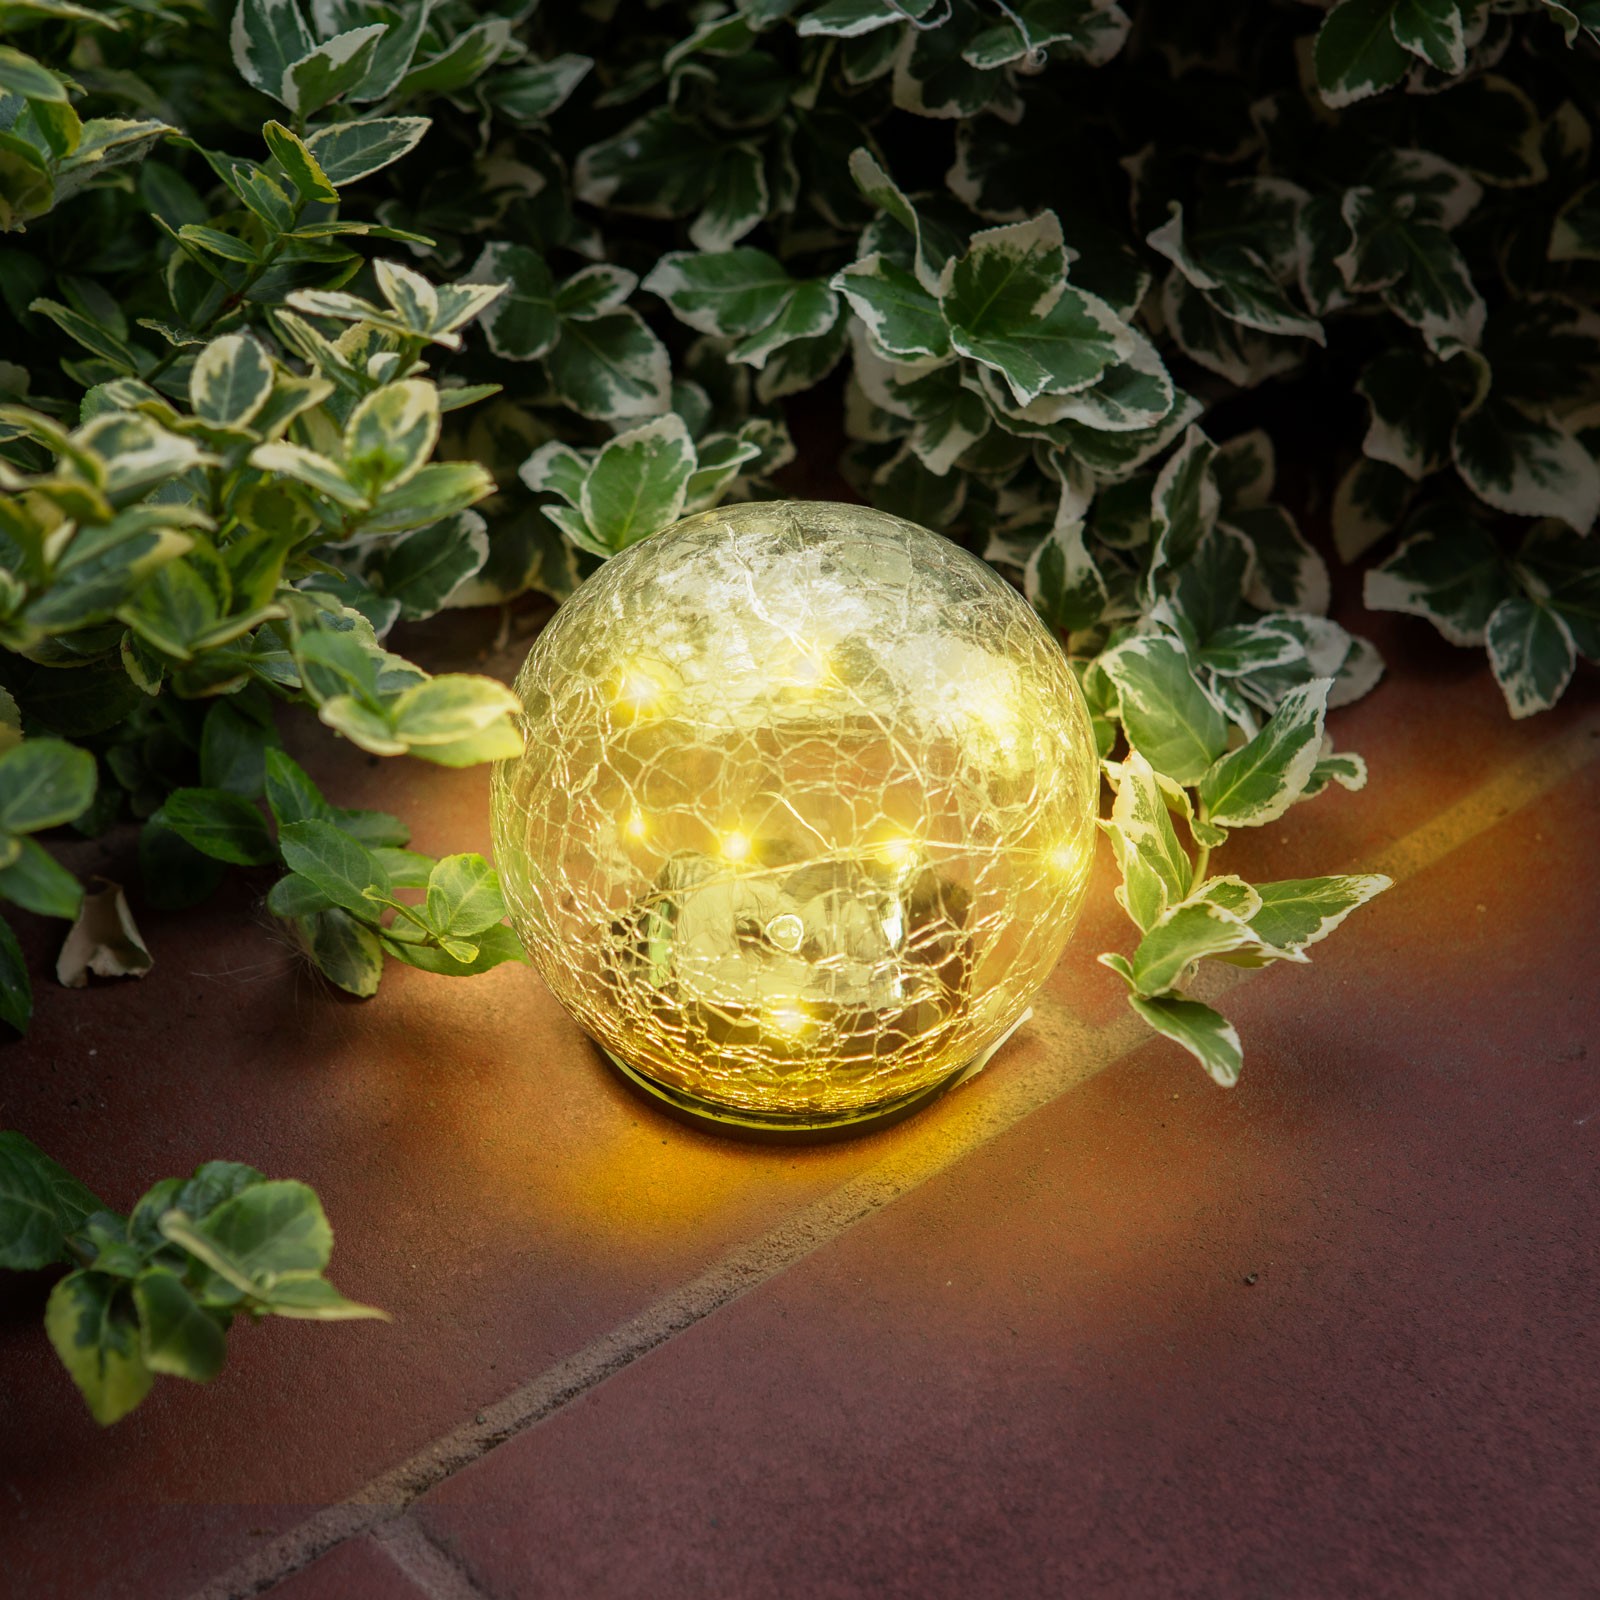 lampa solara sfera sticla - 12 cm - 15 led alb cald